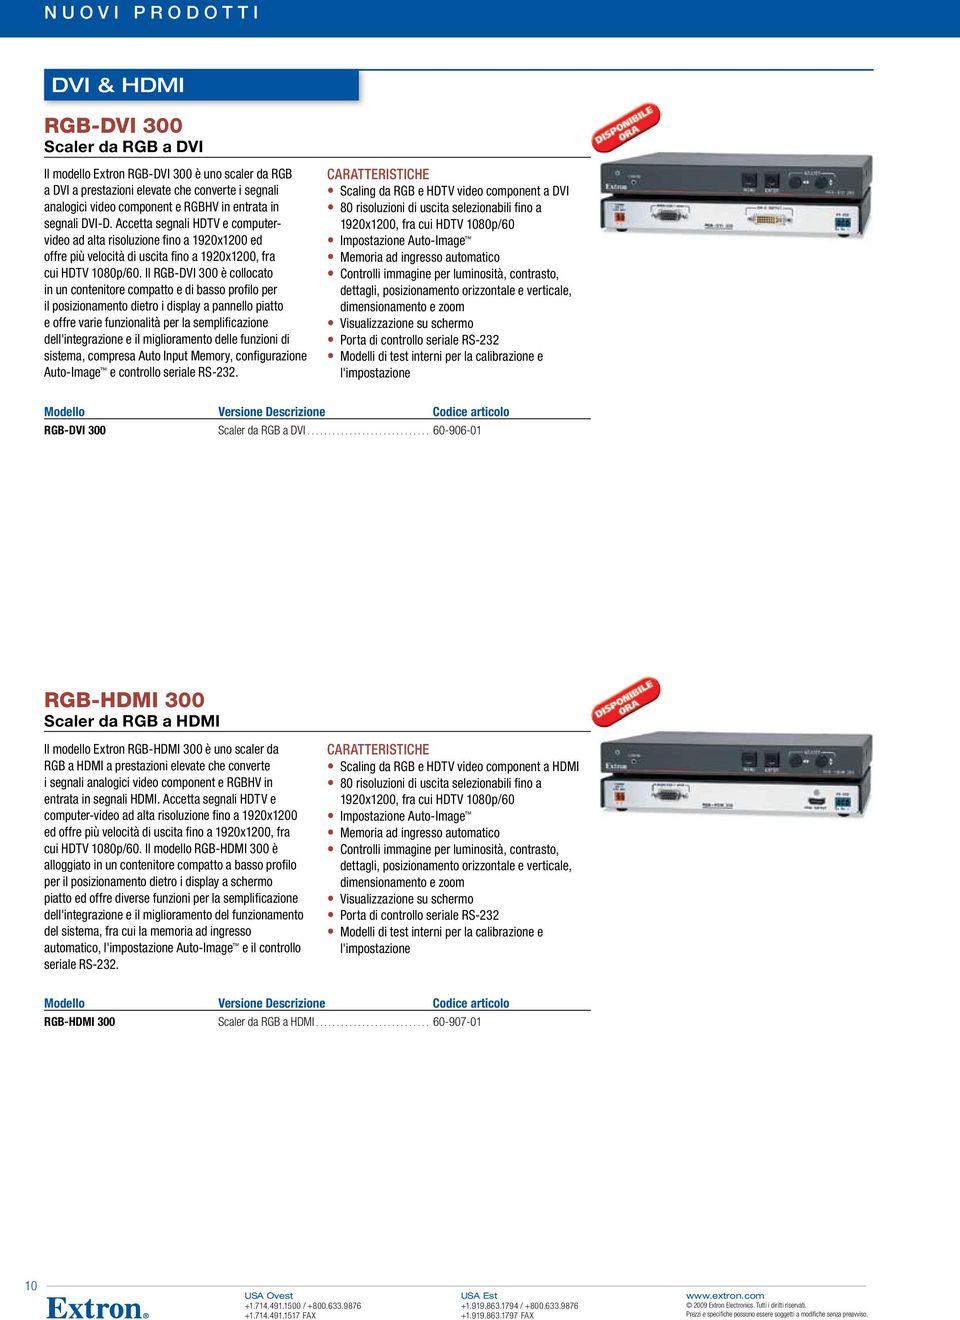 Il RGB-DVI 300 è collocato in un contenitore compatto e di basso profilo per il posizionamento dietro i display a pannello piatto e offre varie funzionalità per la semplificazione dell'integrazione e